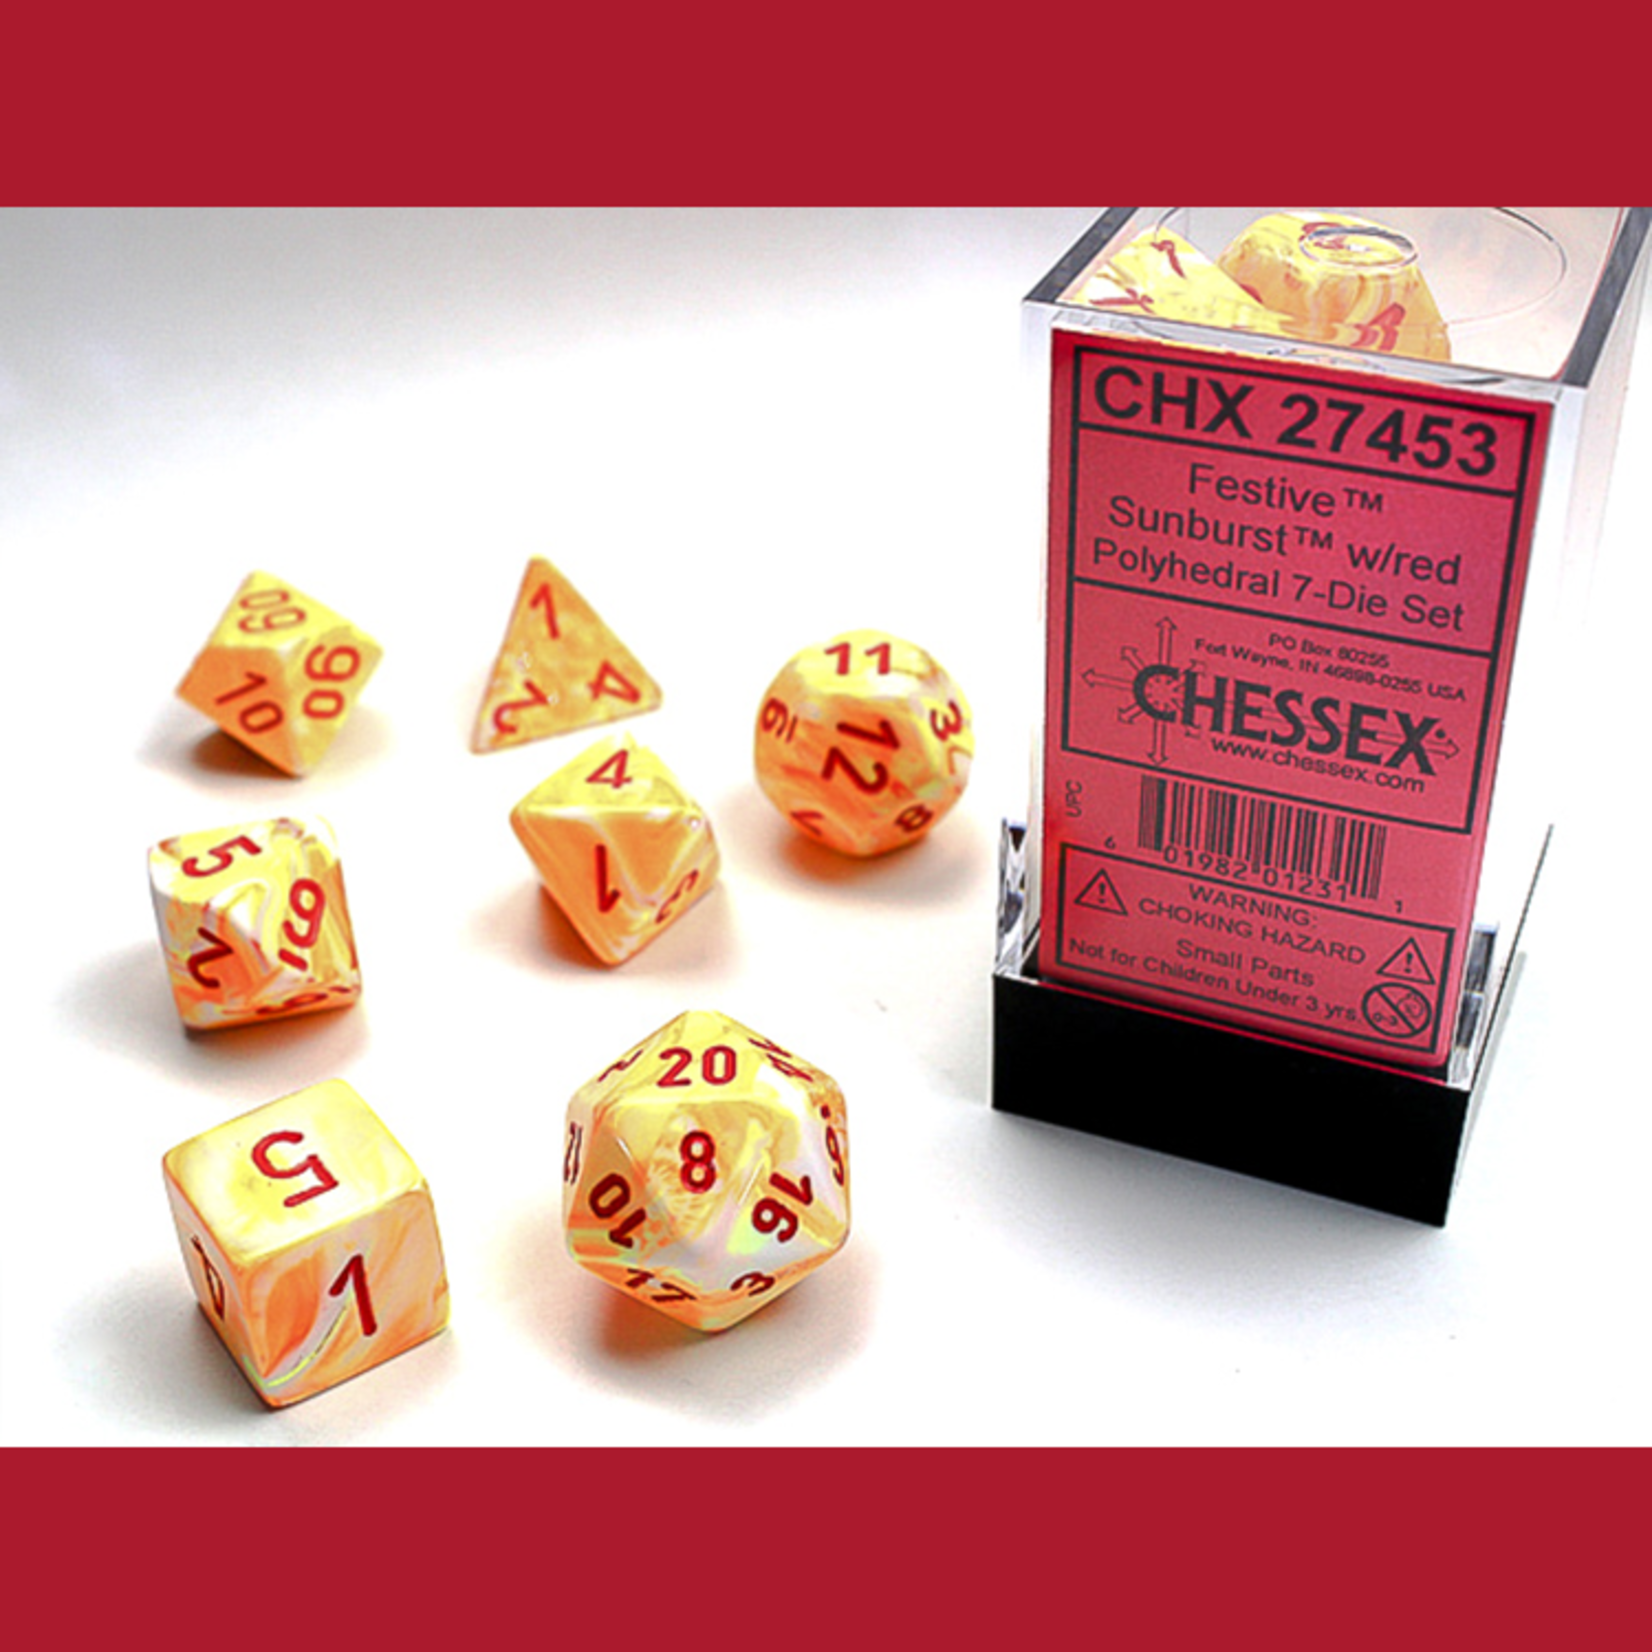 Chessex CHX 27453 Sunburst / Red Polyhedral 7-die Set